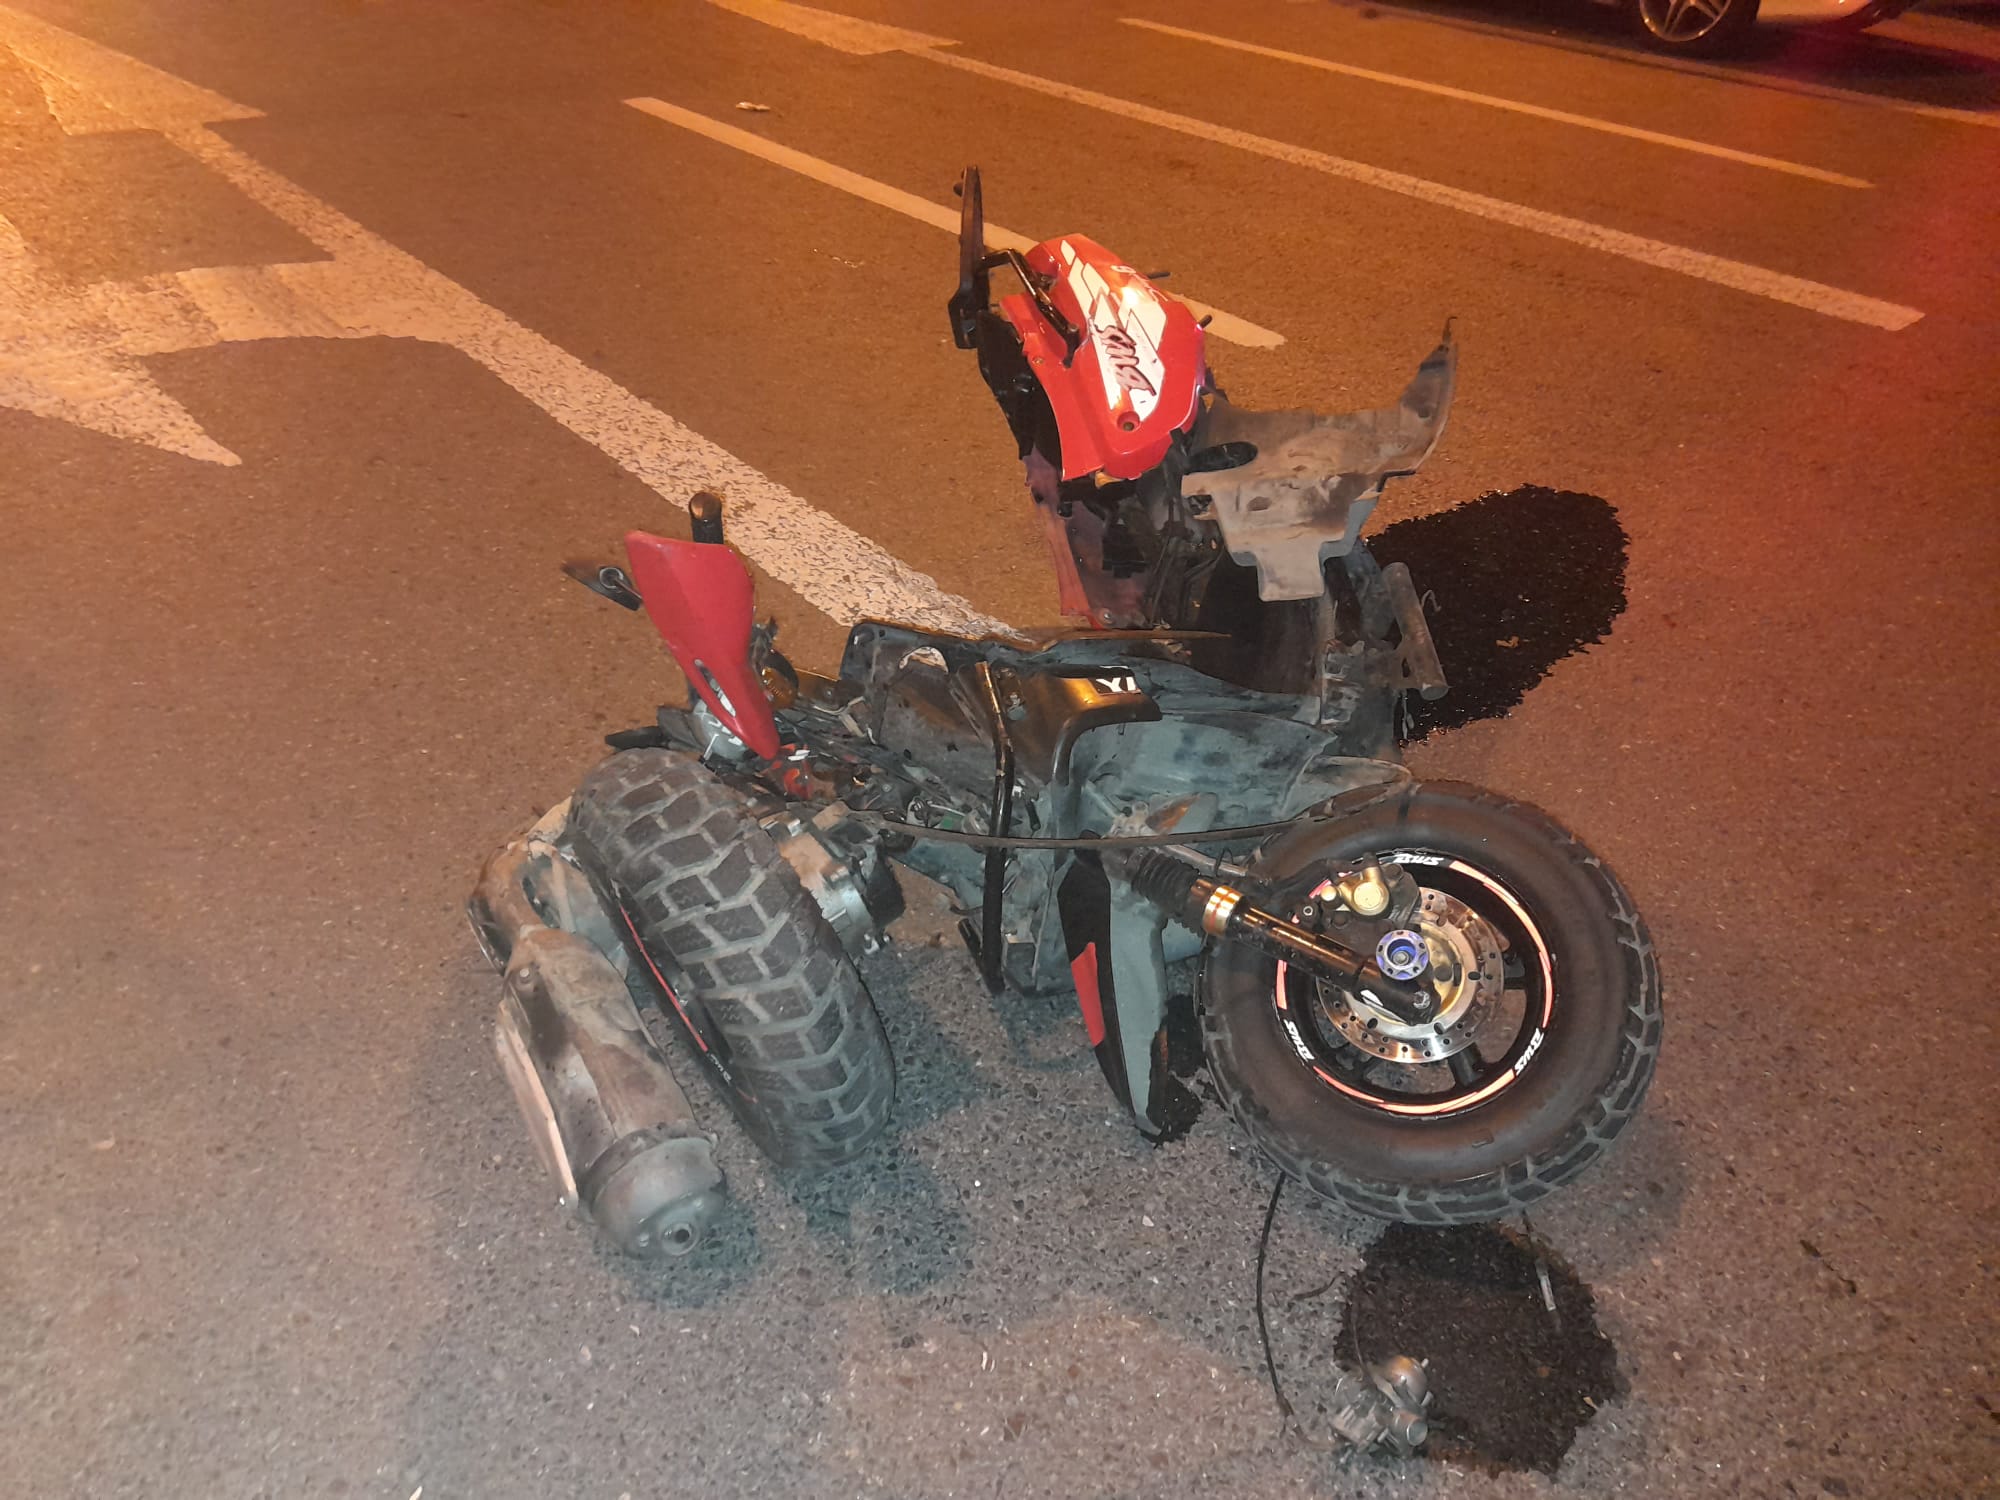 Otomobilin çarptığı motosiklet paramparça oldu, 1 ağır yaralı